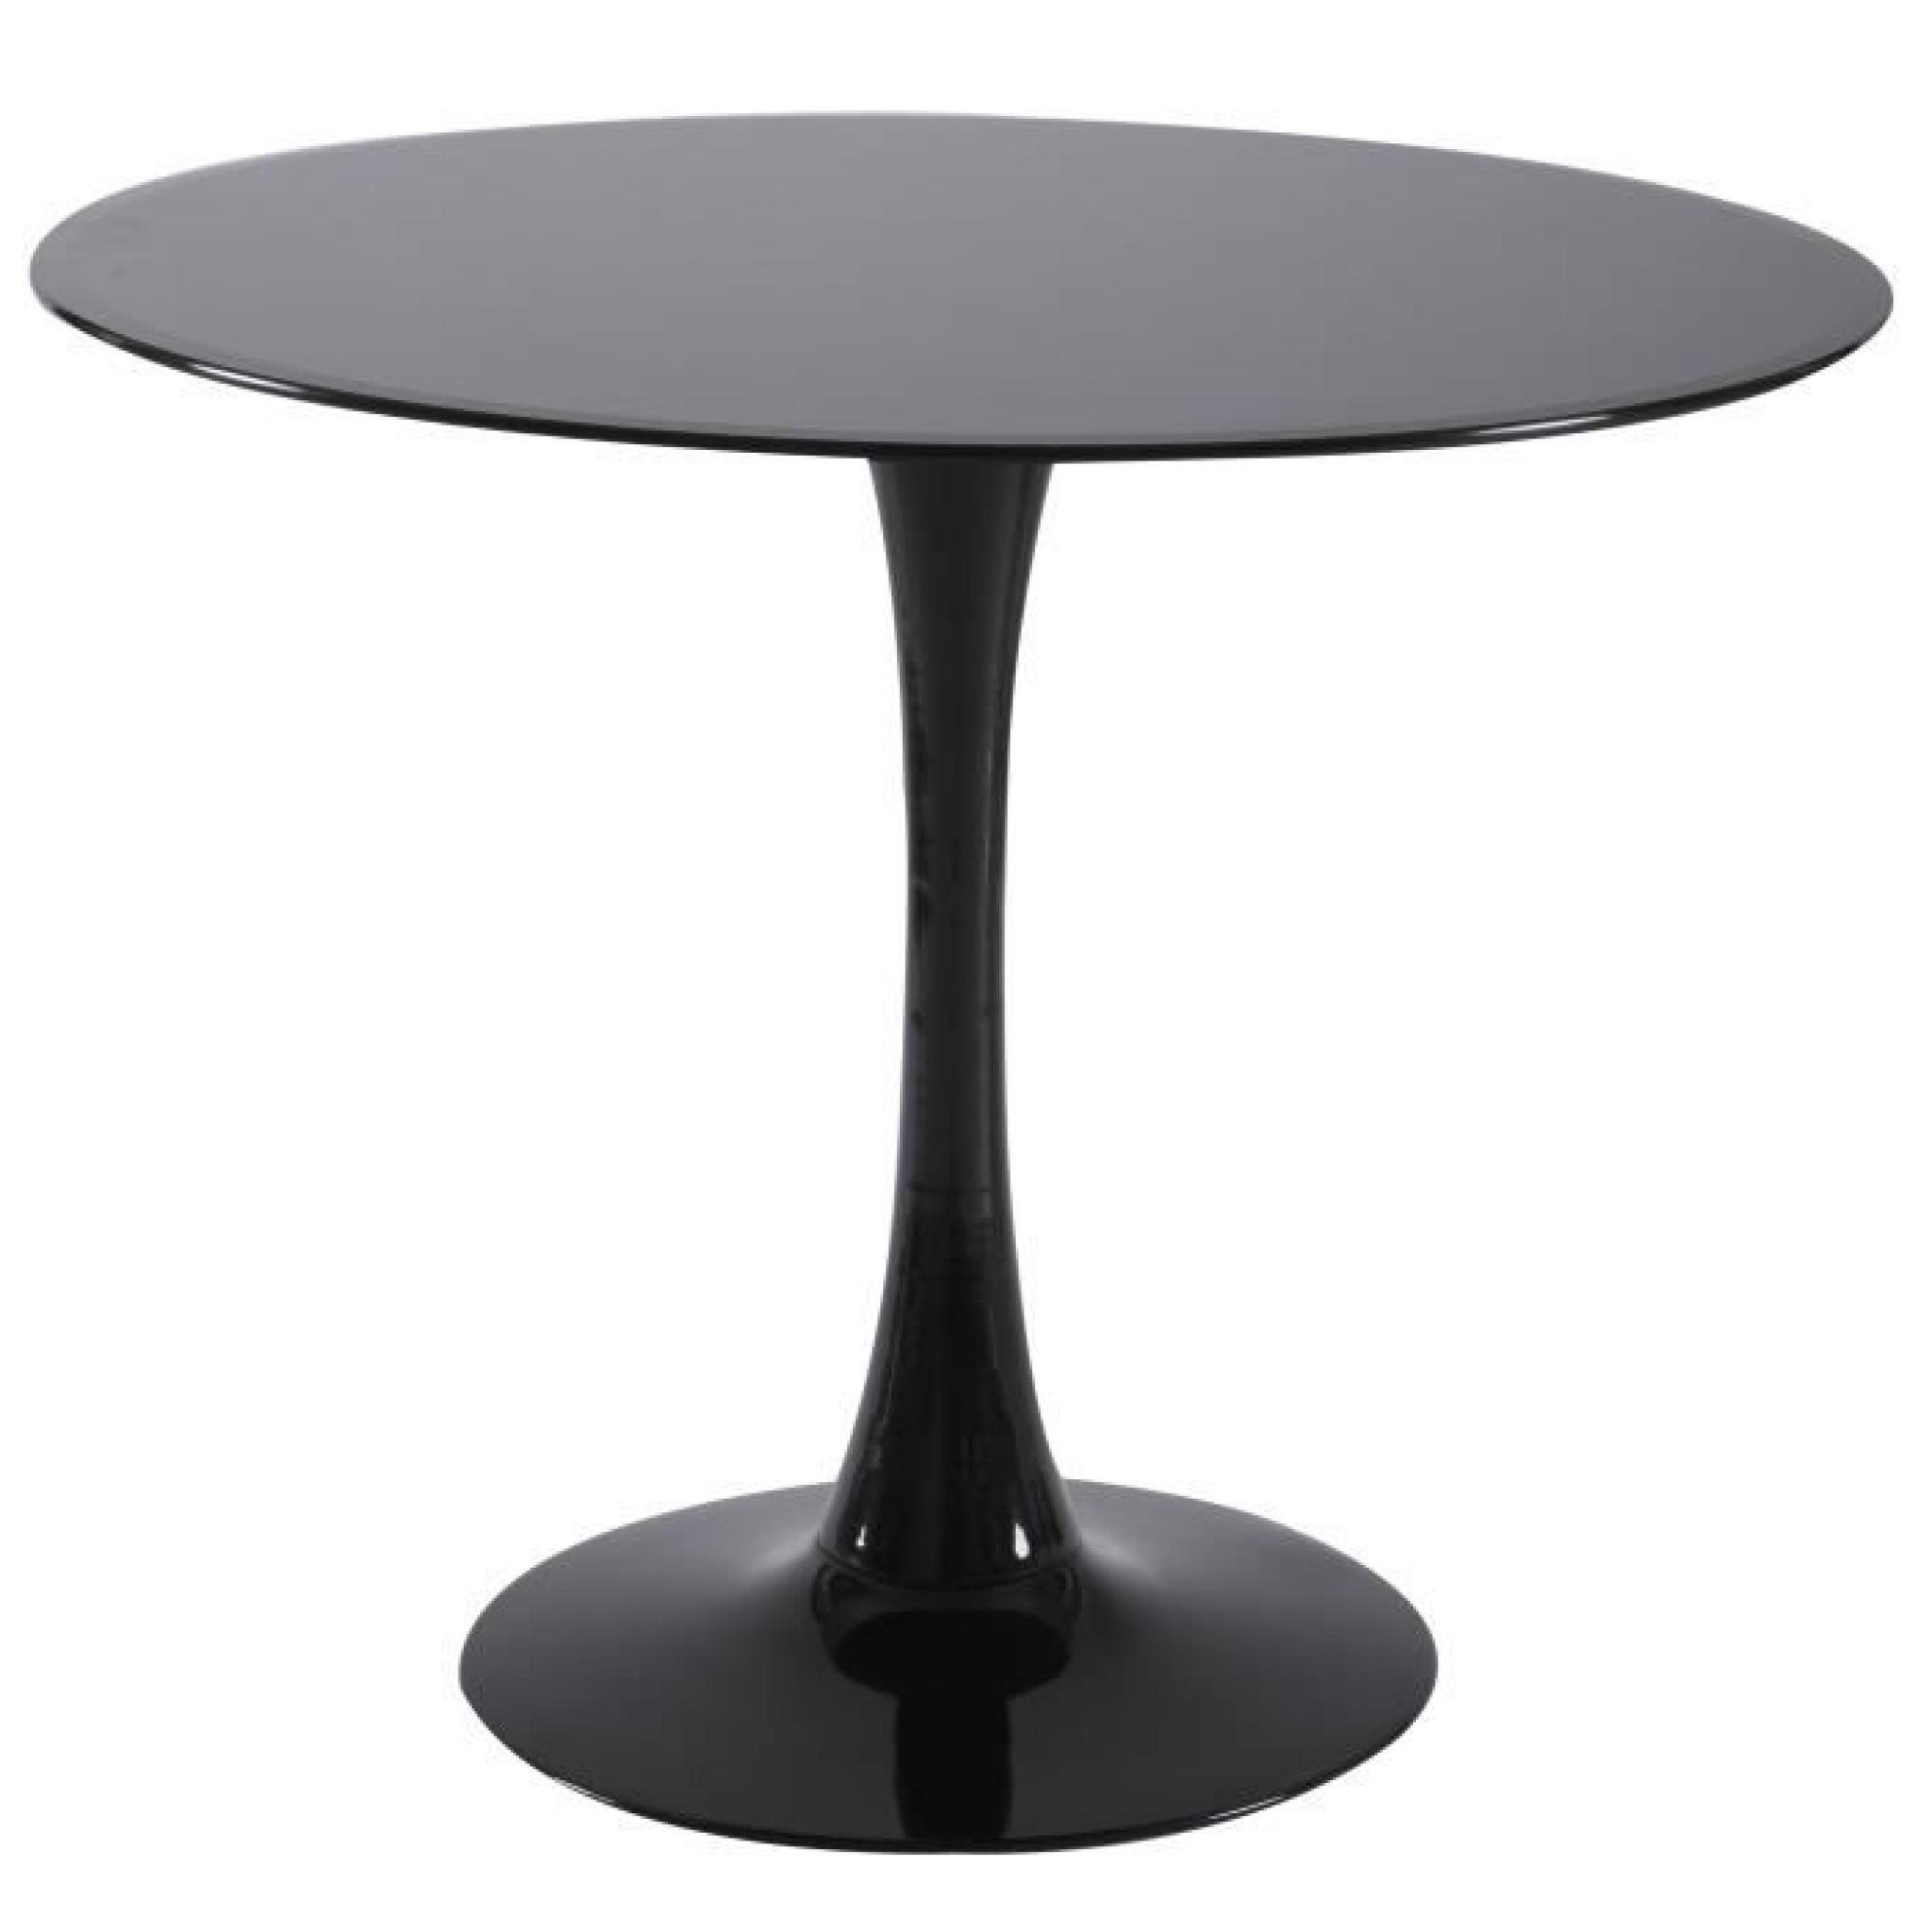 TABLE RONDE ULTRA DESIGN ET MODERNE COLORIS NOIR 